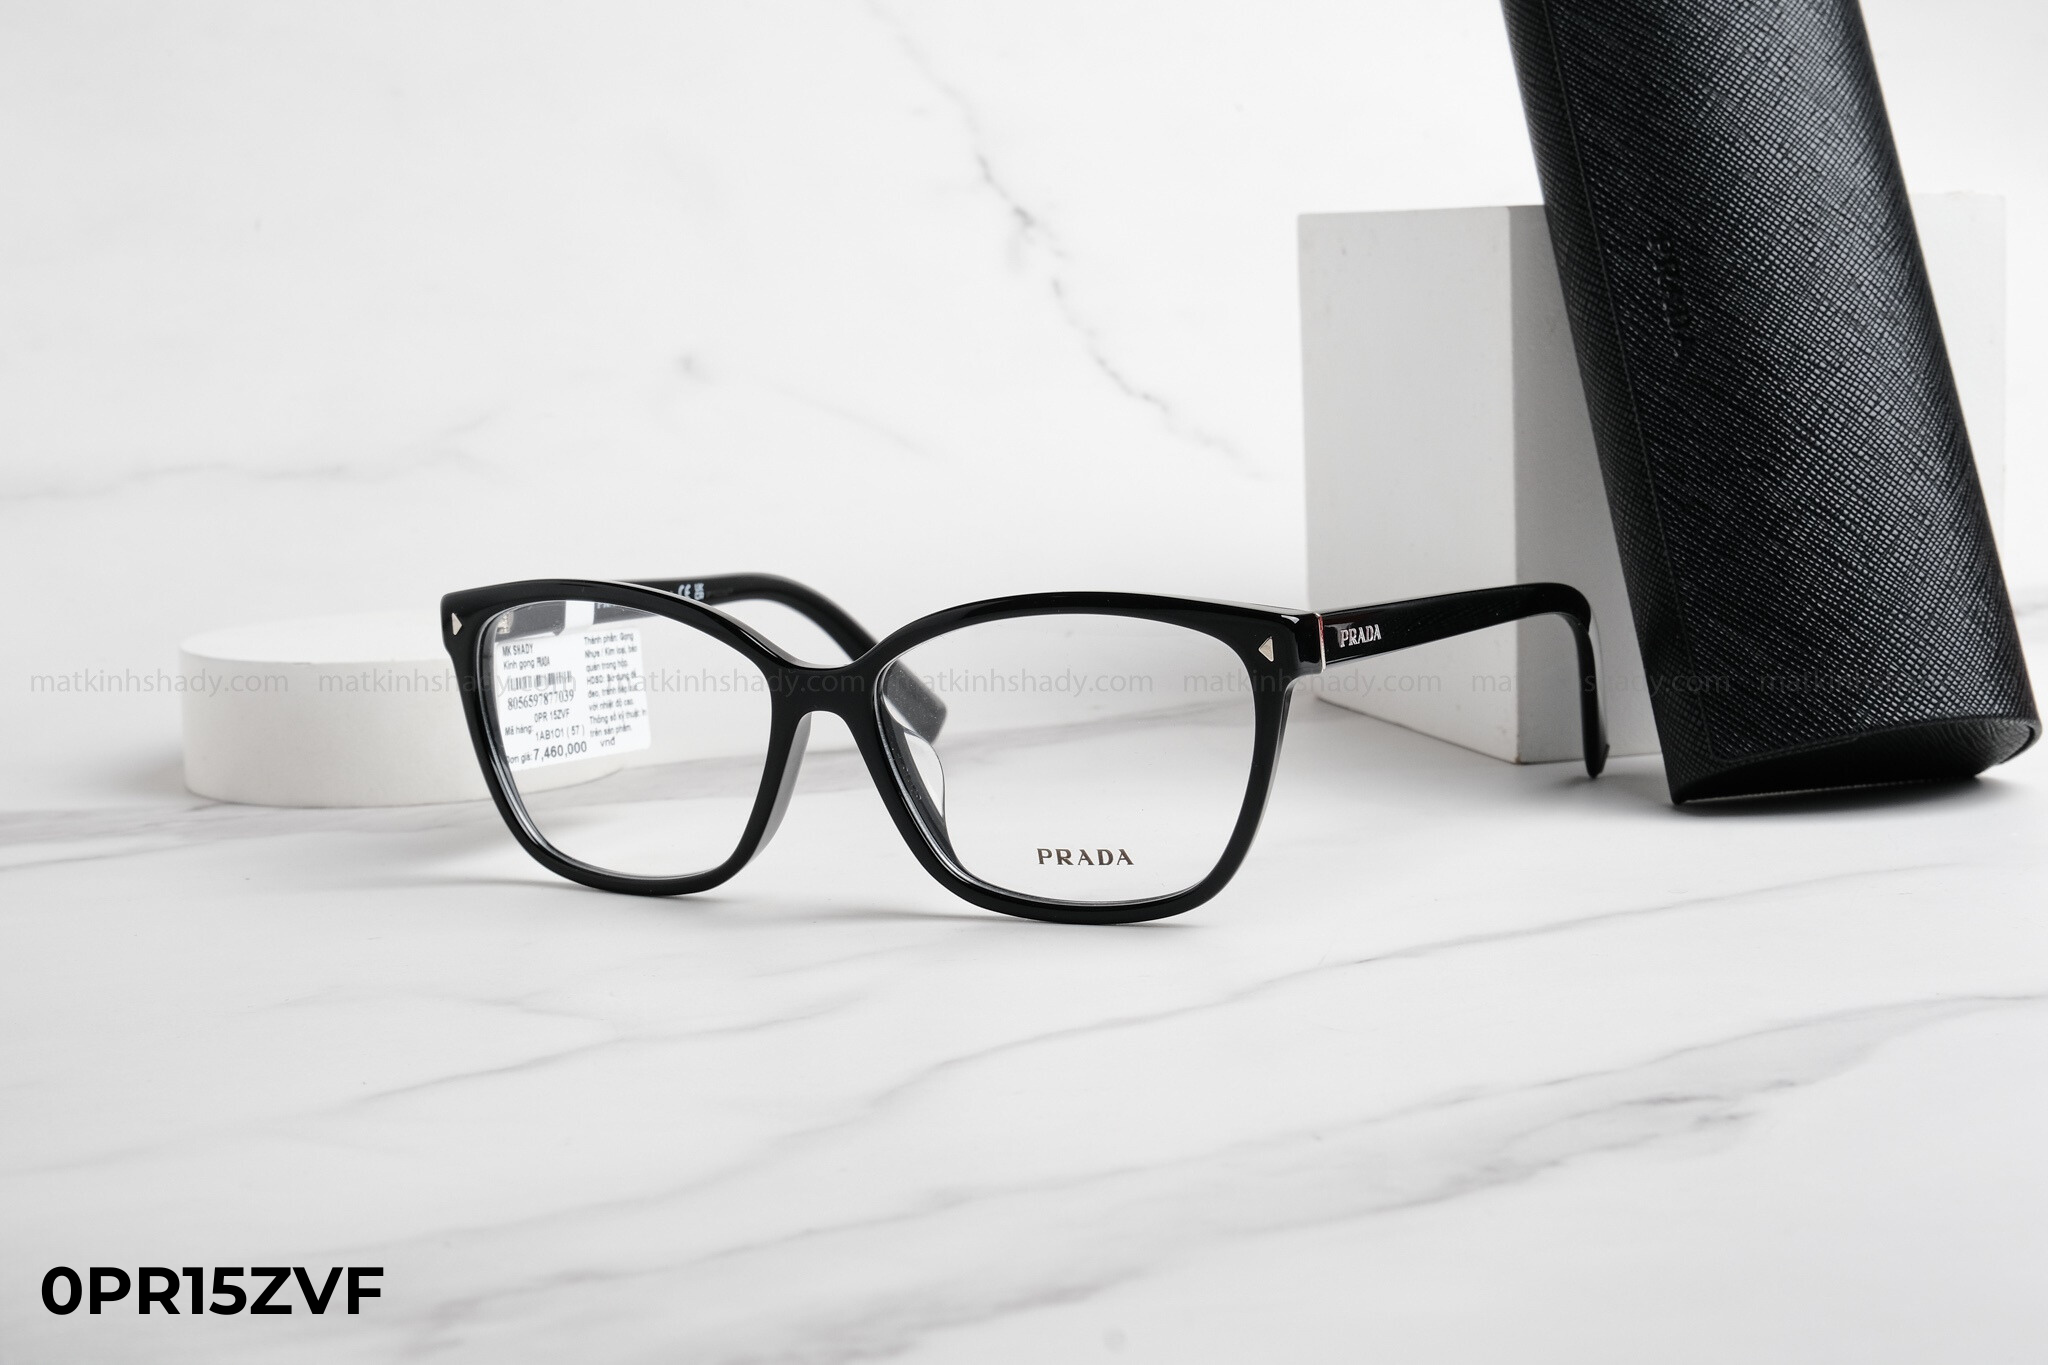  Prada - Eyewear - Glasses - 0PR15ZVF 